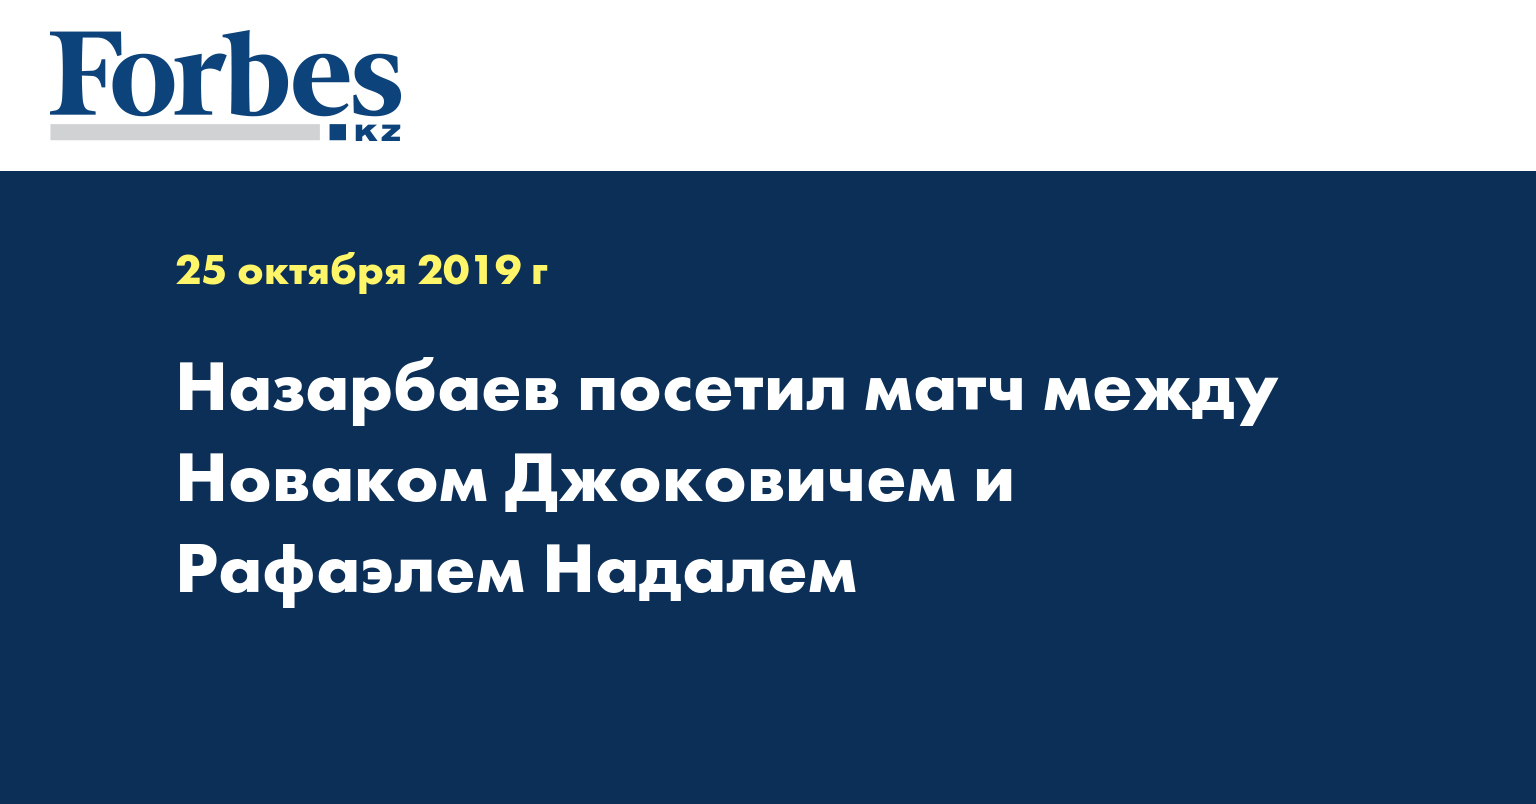 Назарбаев посетил матч между Новаком Джоковичем и Рафаэлем Надалем